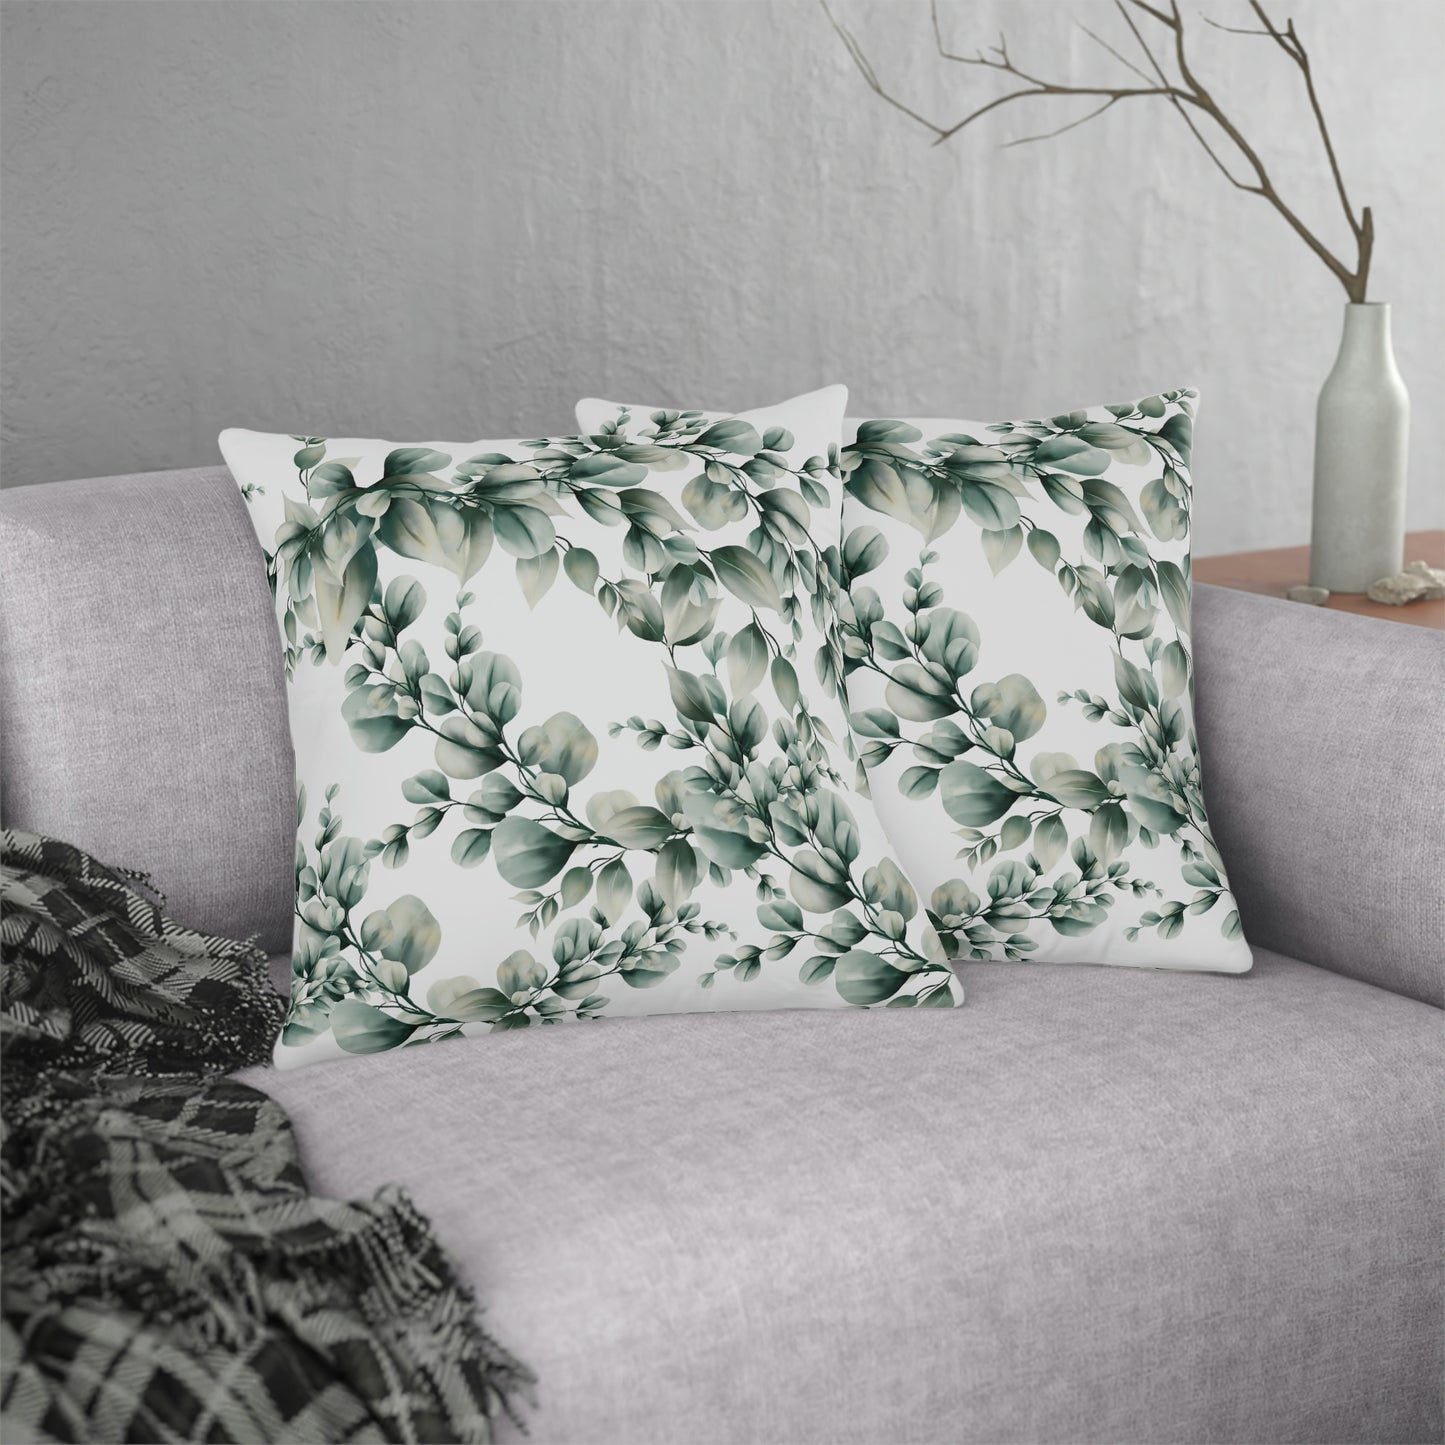 Eucalyptus Print Pillow / Eucalyptus Decor / Outdoor Patio Pillow / Waterproof Pillow